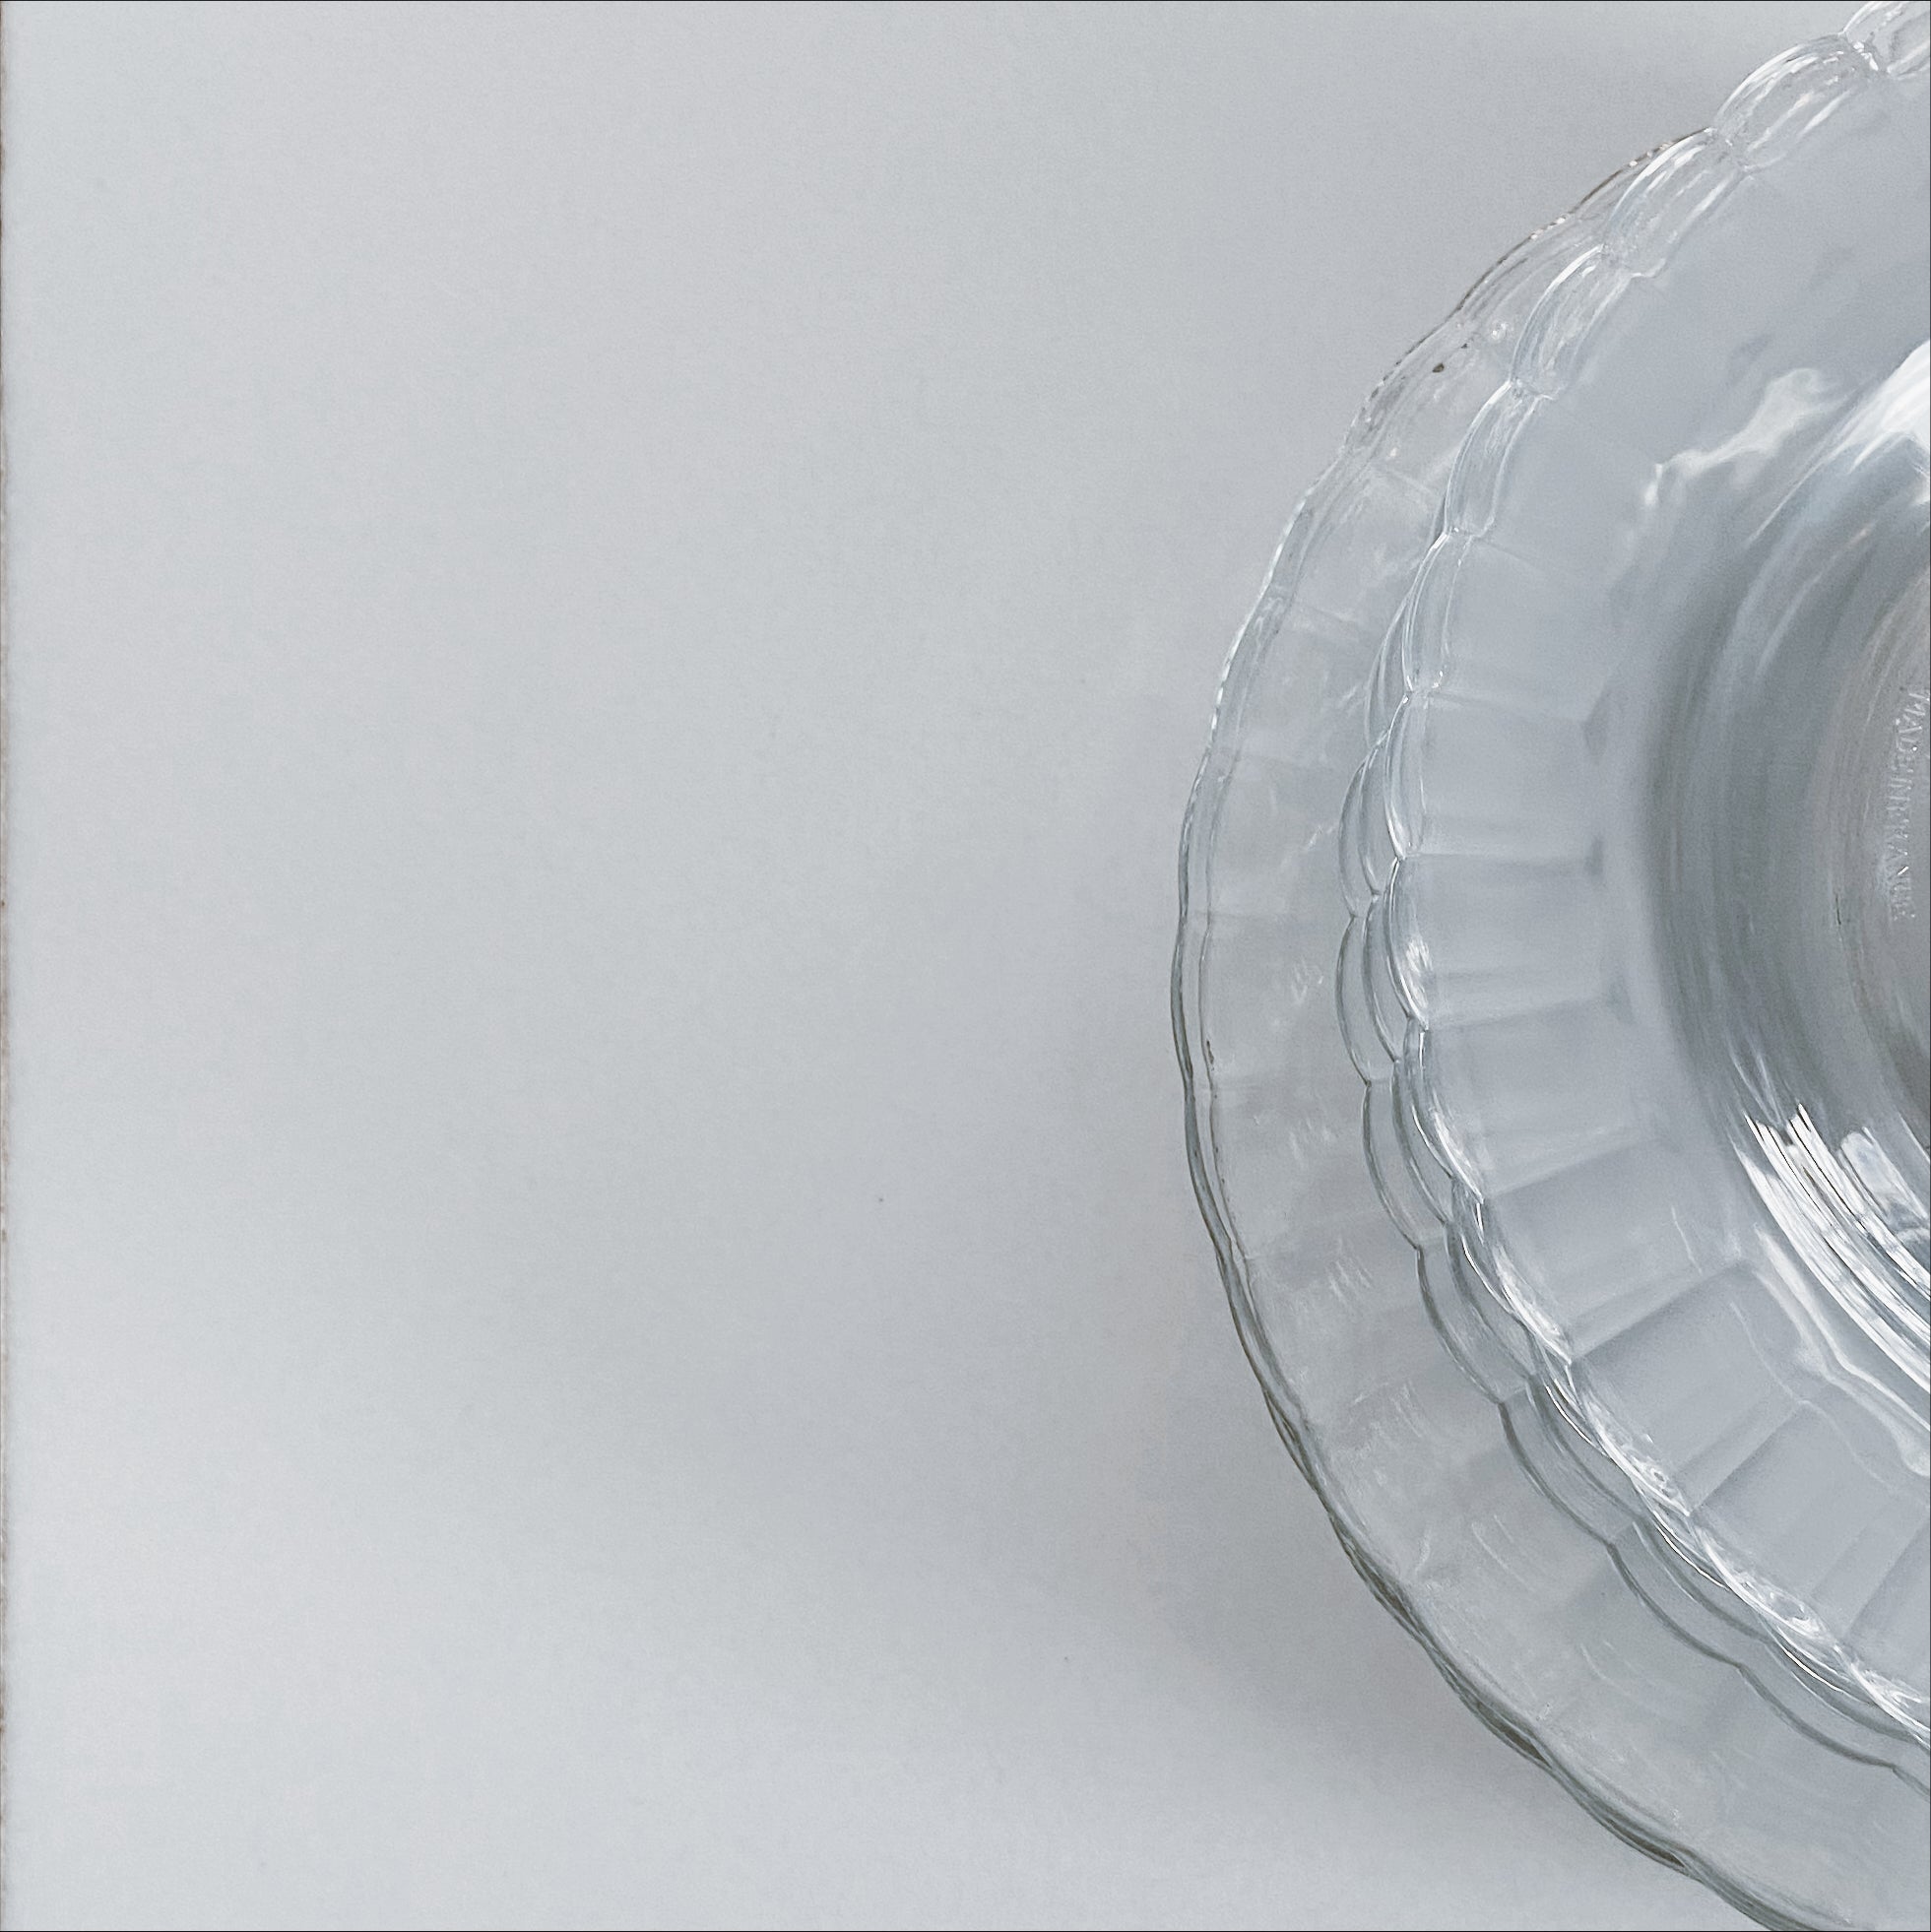 Assiettes transparentes : privilégiez de belles assiettes en verre - MBT